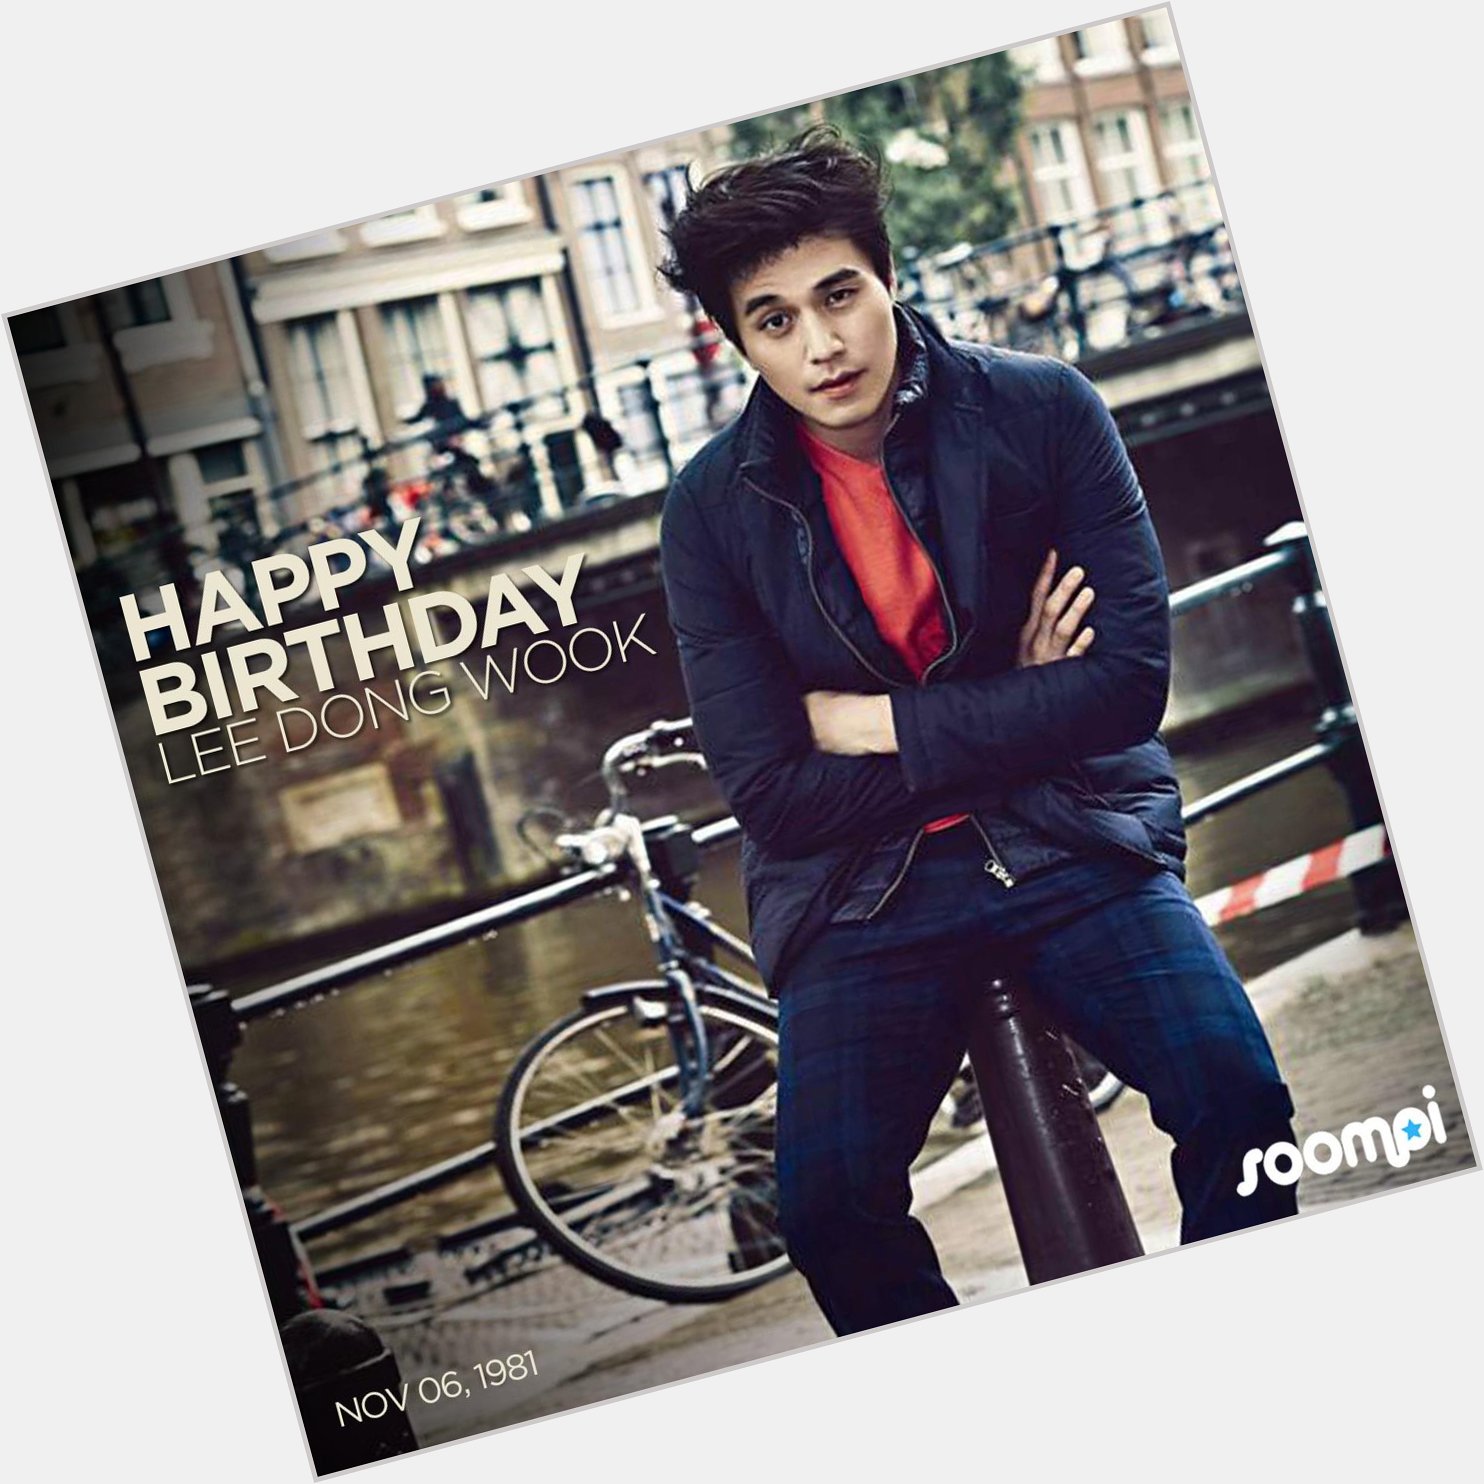  soompi Happy Birthday to Celebrate by watching him on SoompiTV -  